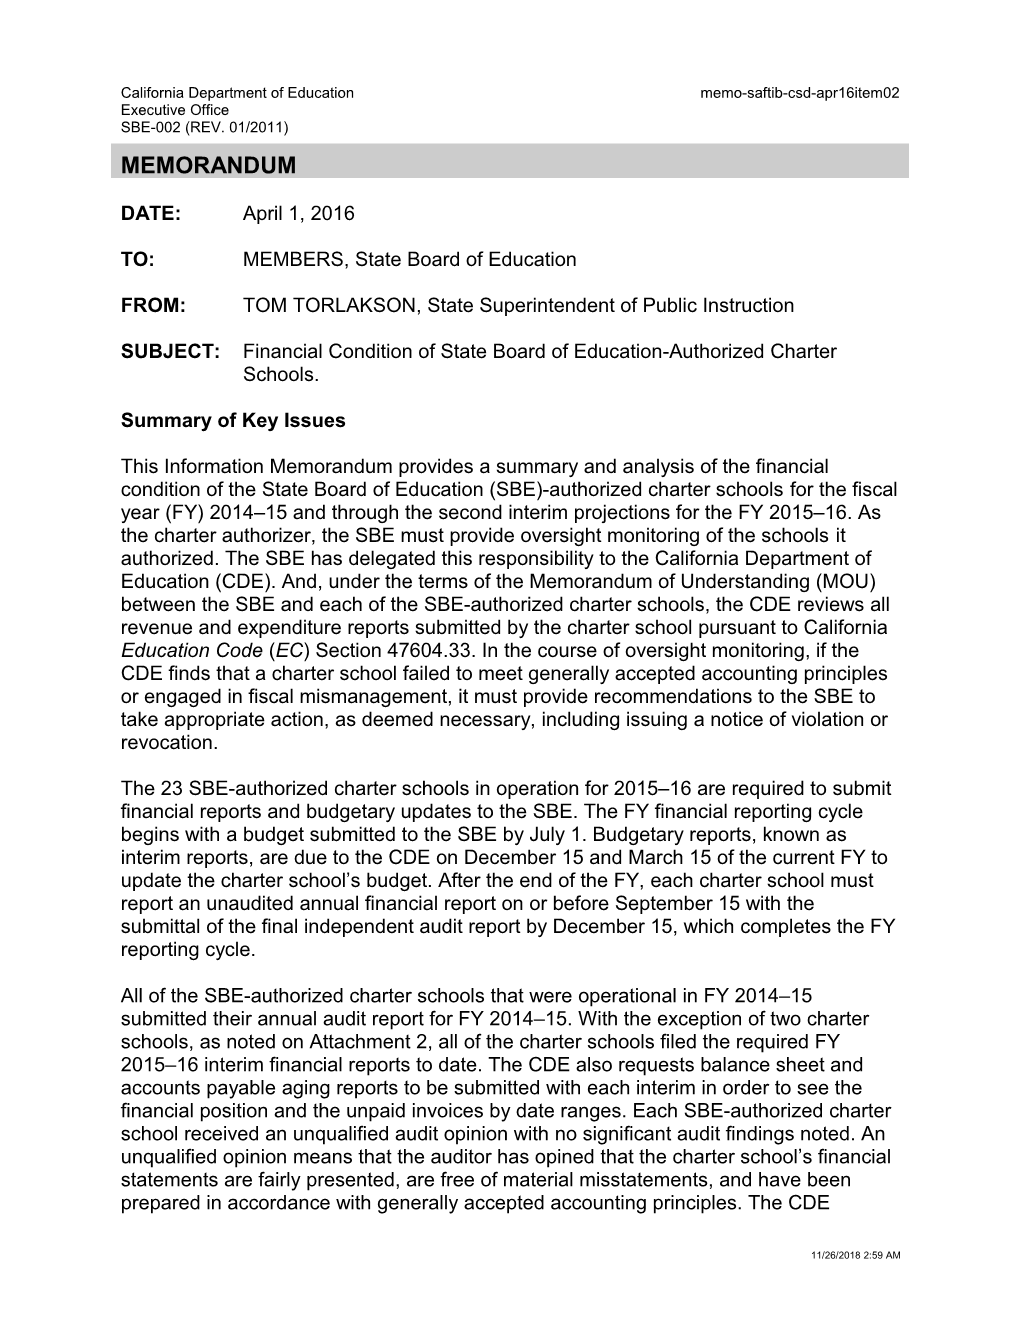 April 2016 Memo CSD Item 02 - Information Memorandum (CA State Board of Education)